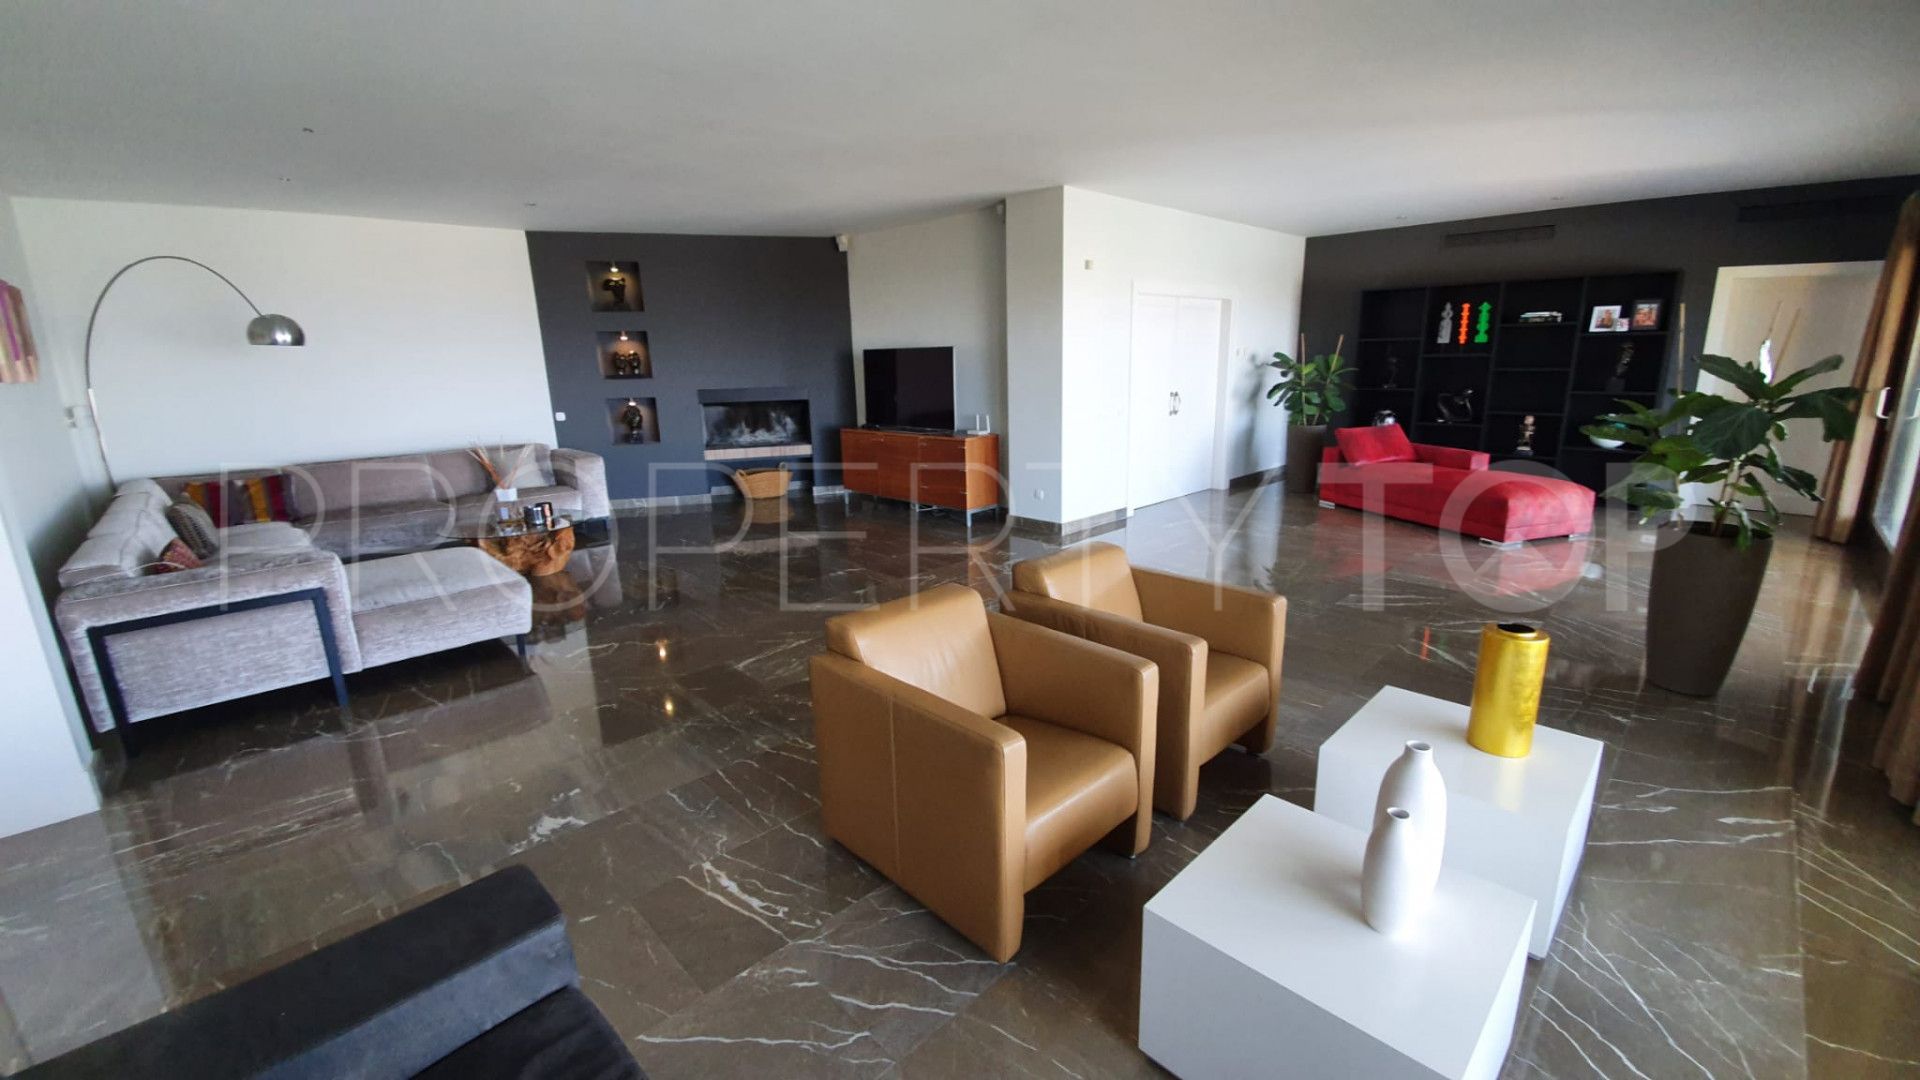 6 bedrooms villa for sale in Los Flamingos